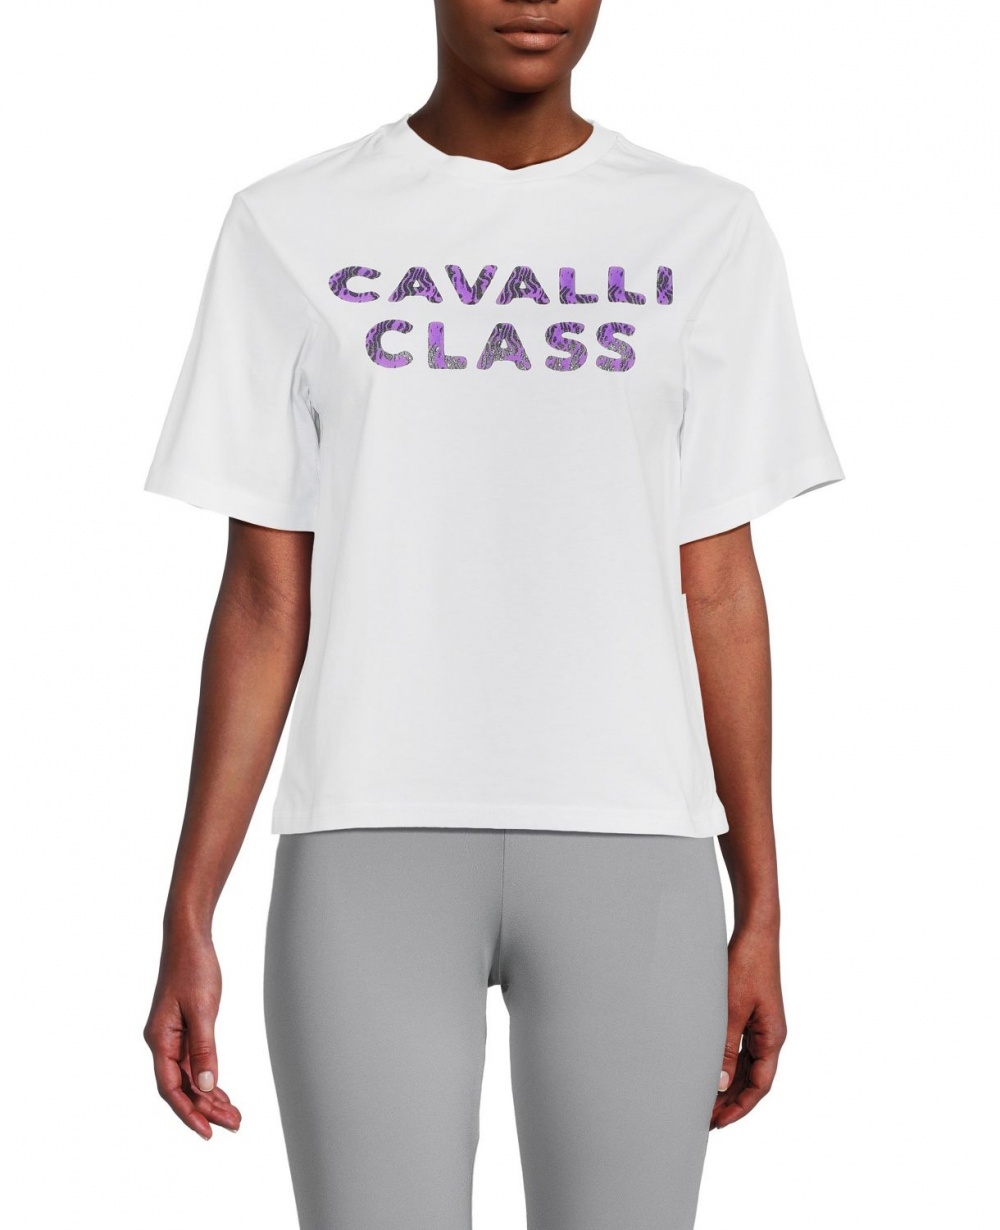 Футболка CAVALLI CLASS 44-46